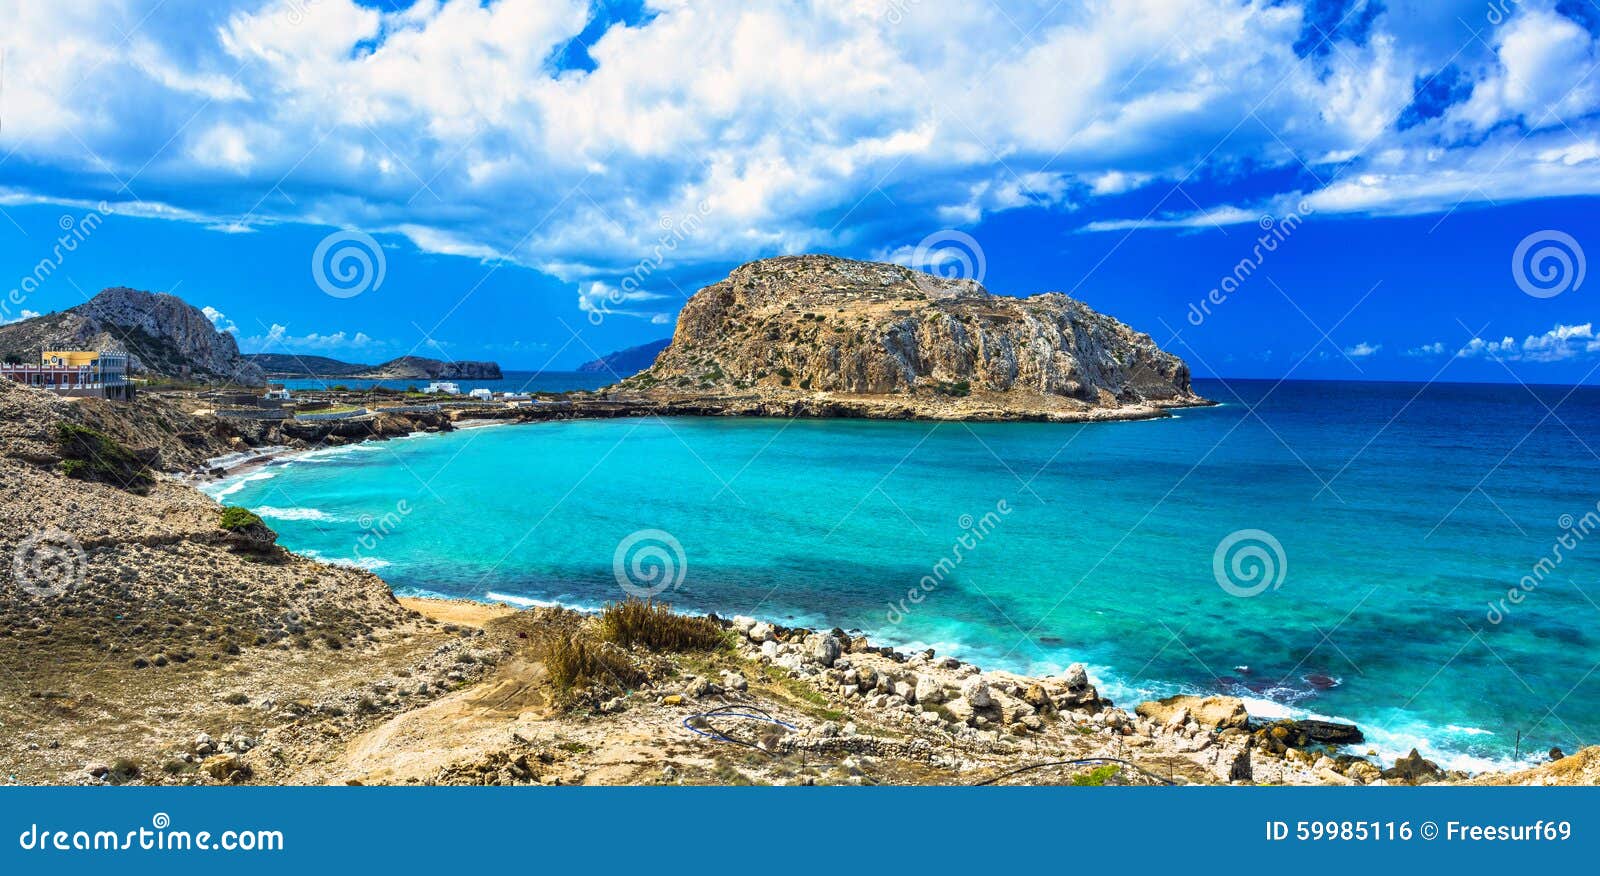 impressive greek islands - karpathos (dodekanese)